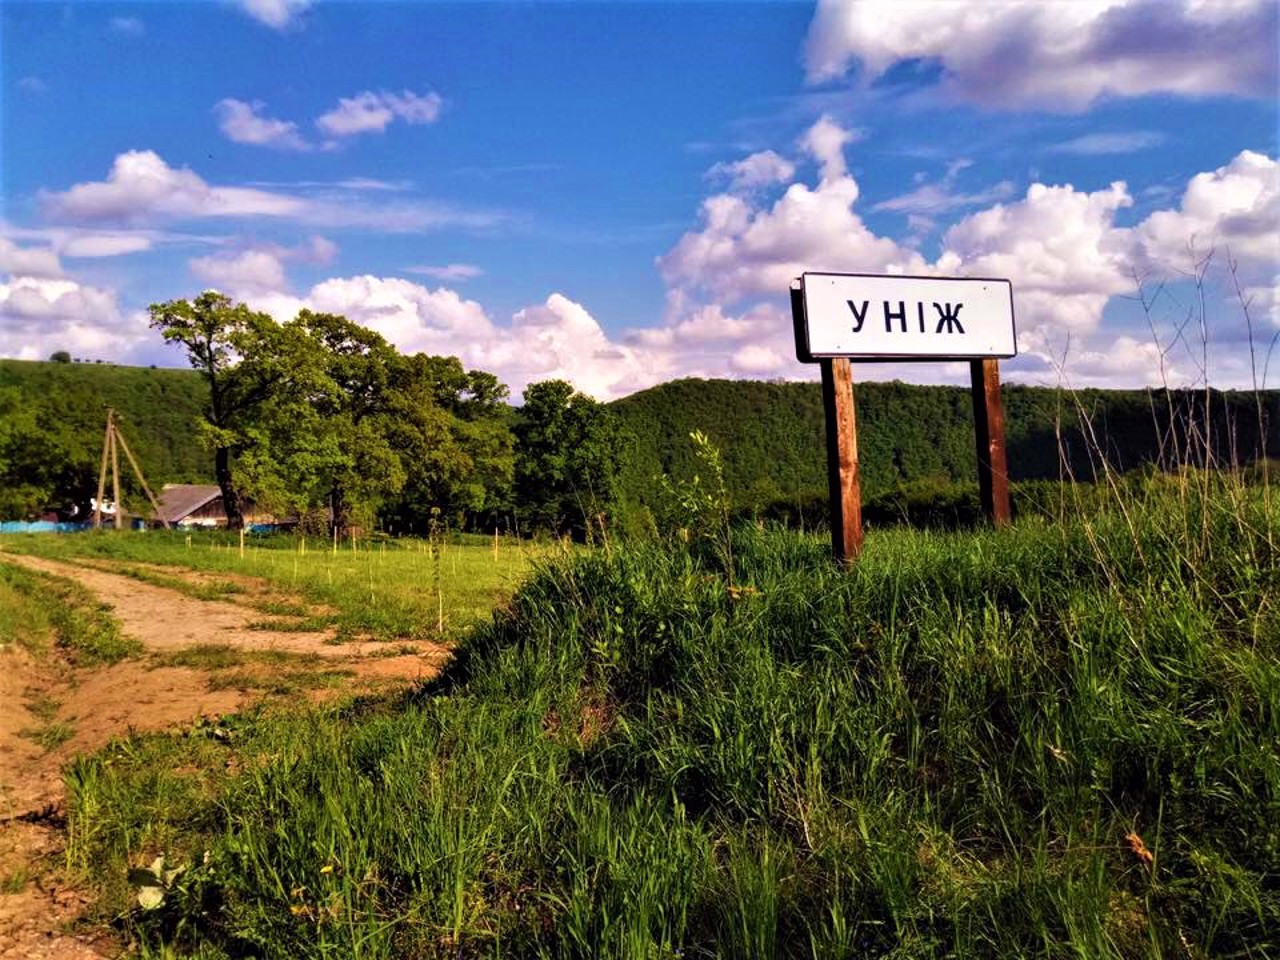 Unizh village